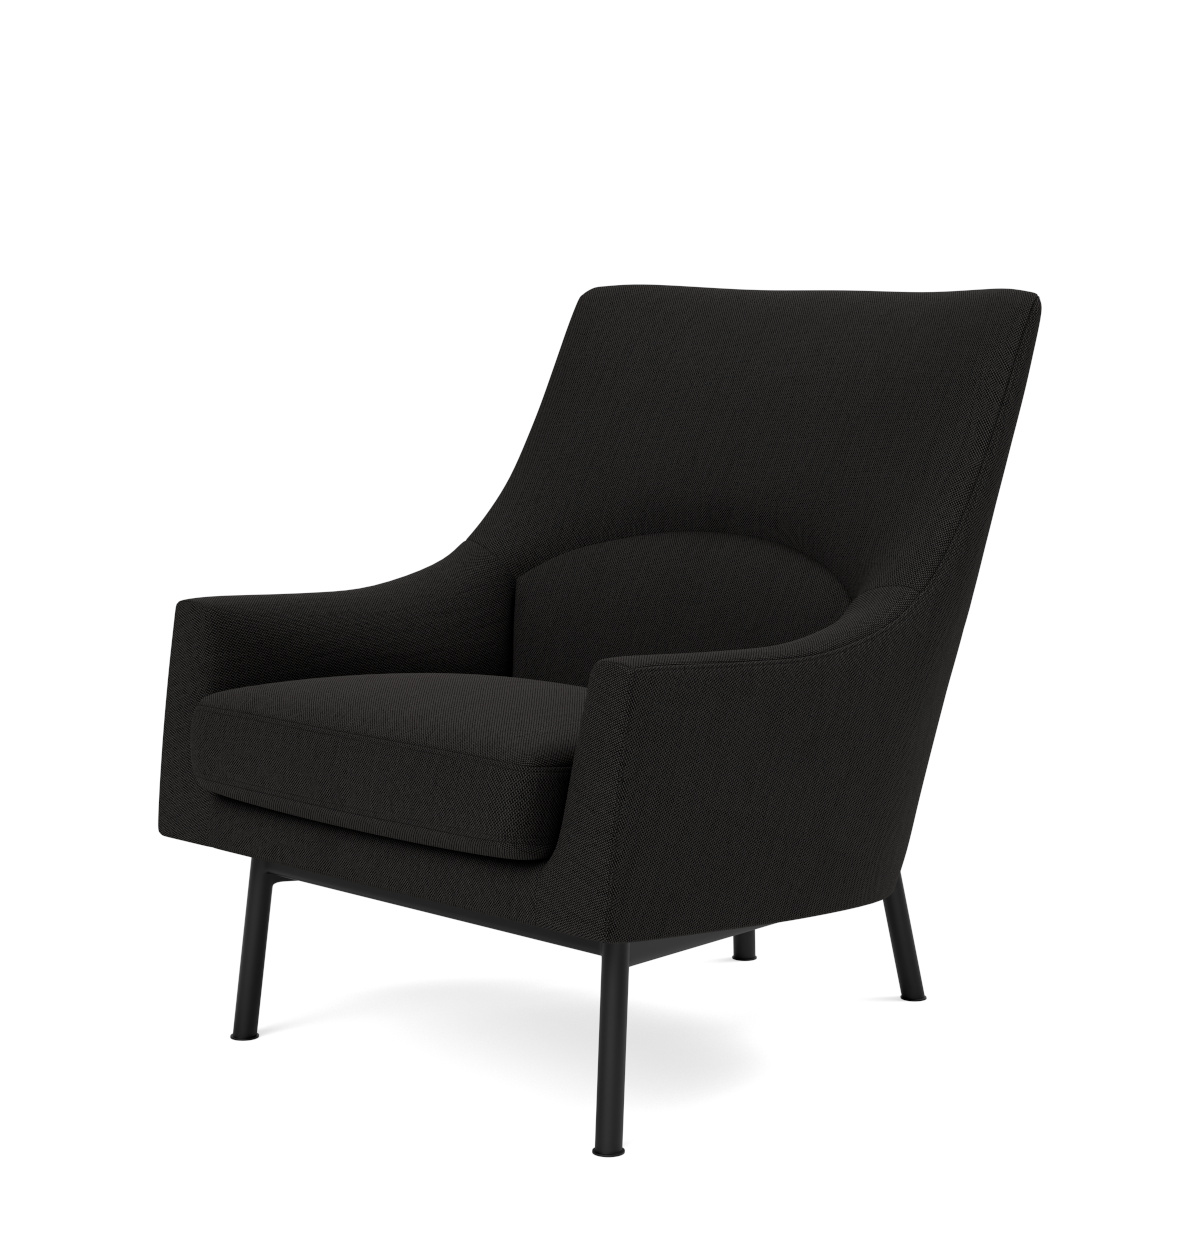 A-Chair Metal Base, schwarz / re-wool 198